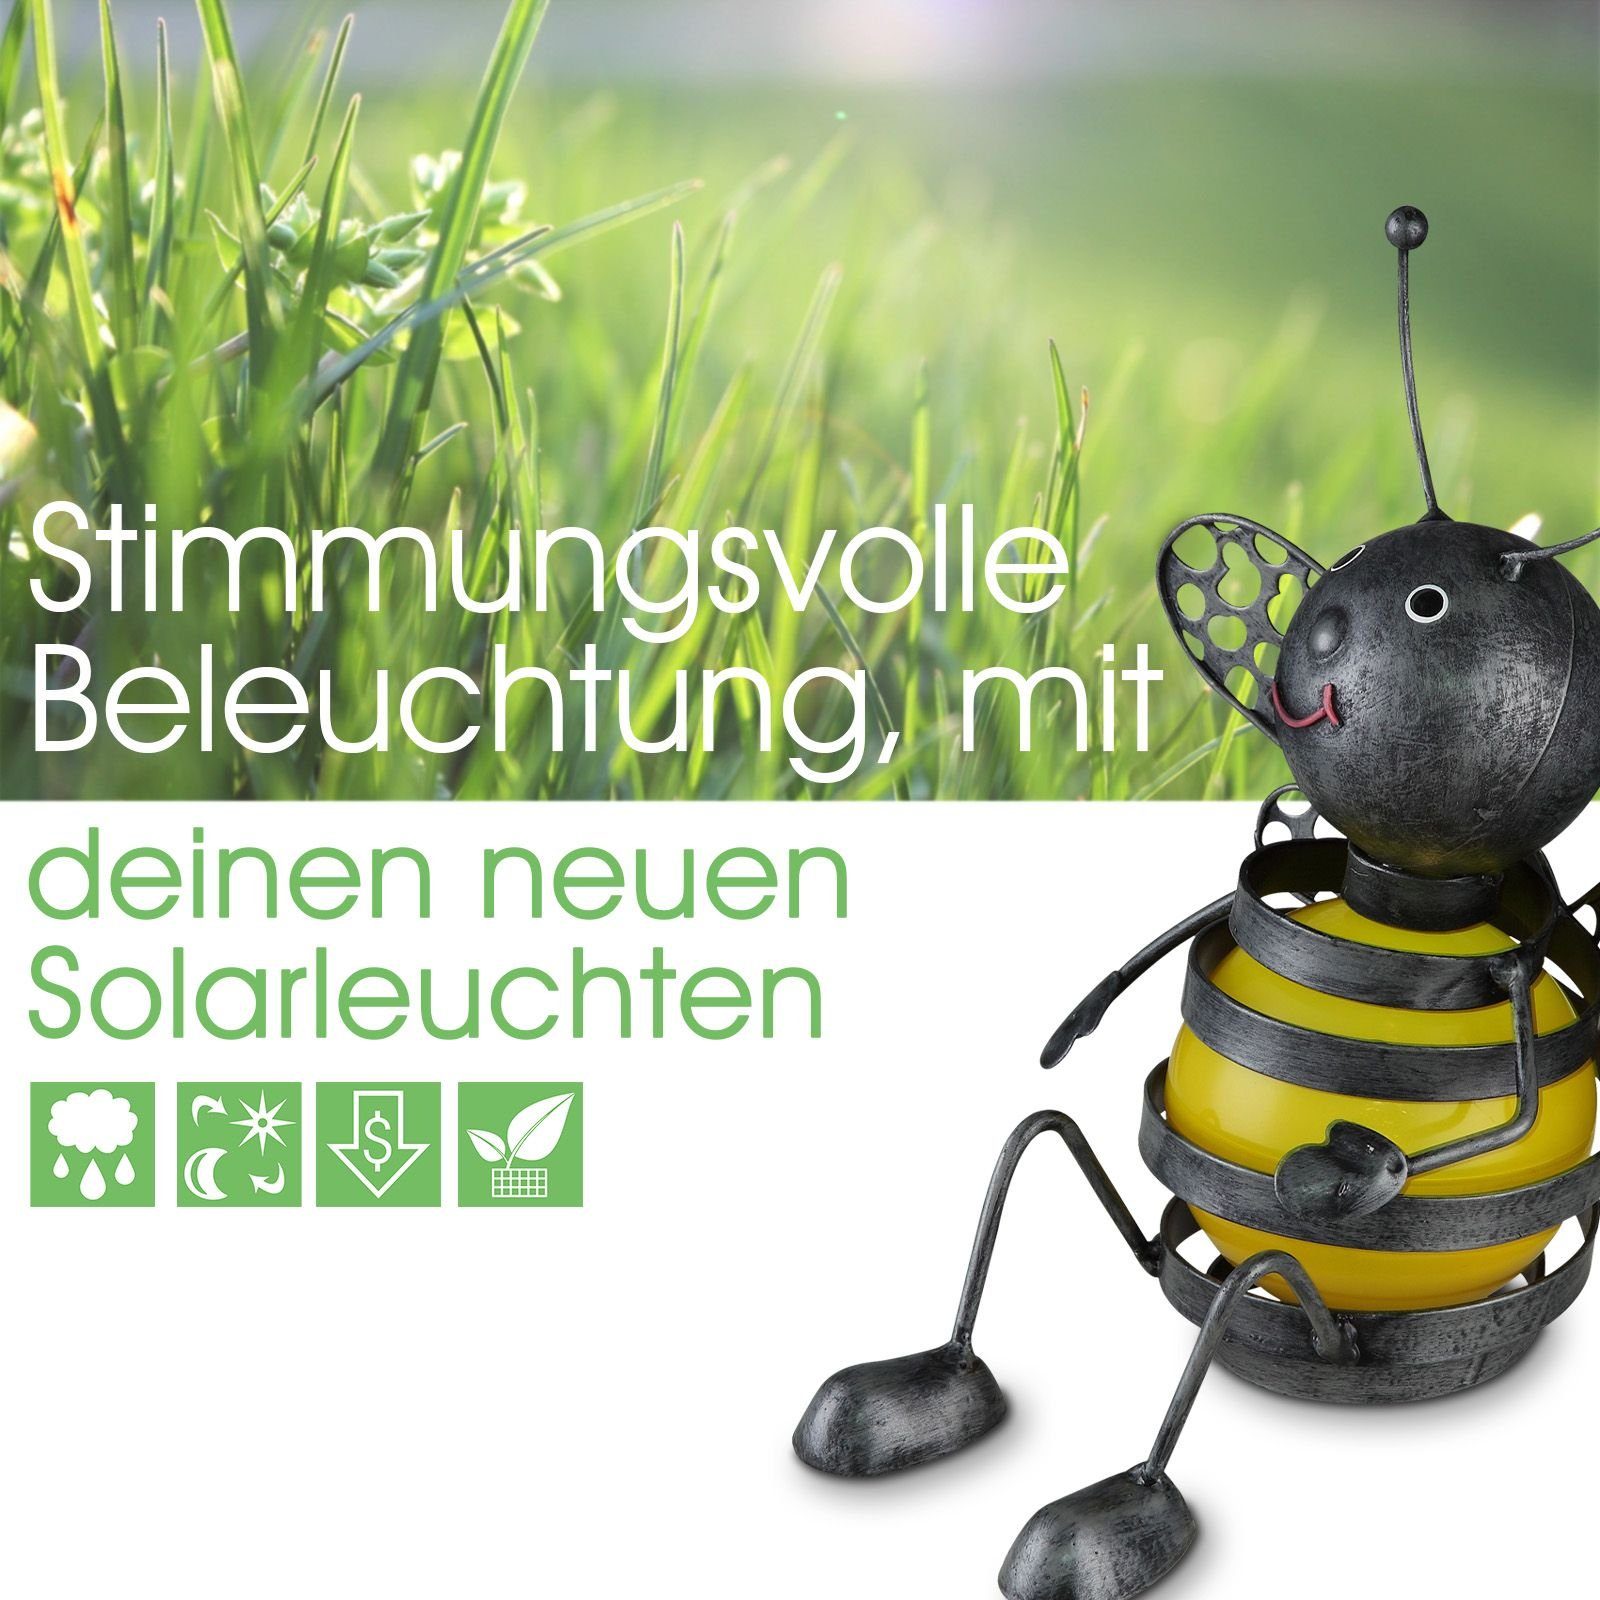 bmf-versand LED Solarleuchte LED Solarlampe 3er Set Solarleuchte Gartenleuchte Metall Biene Außen